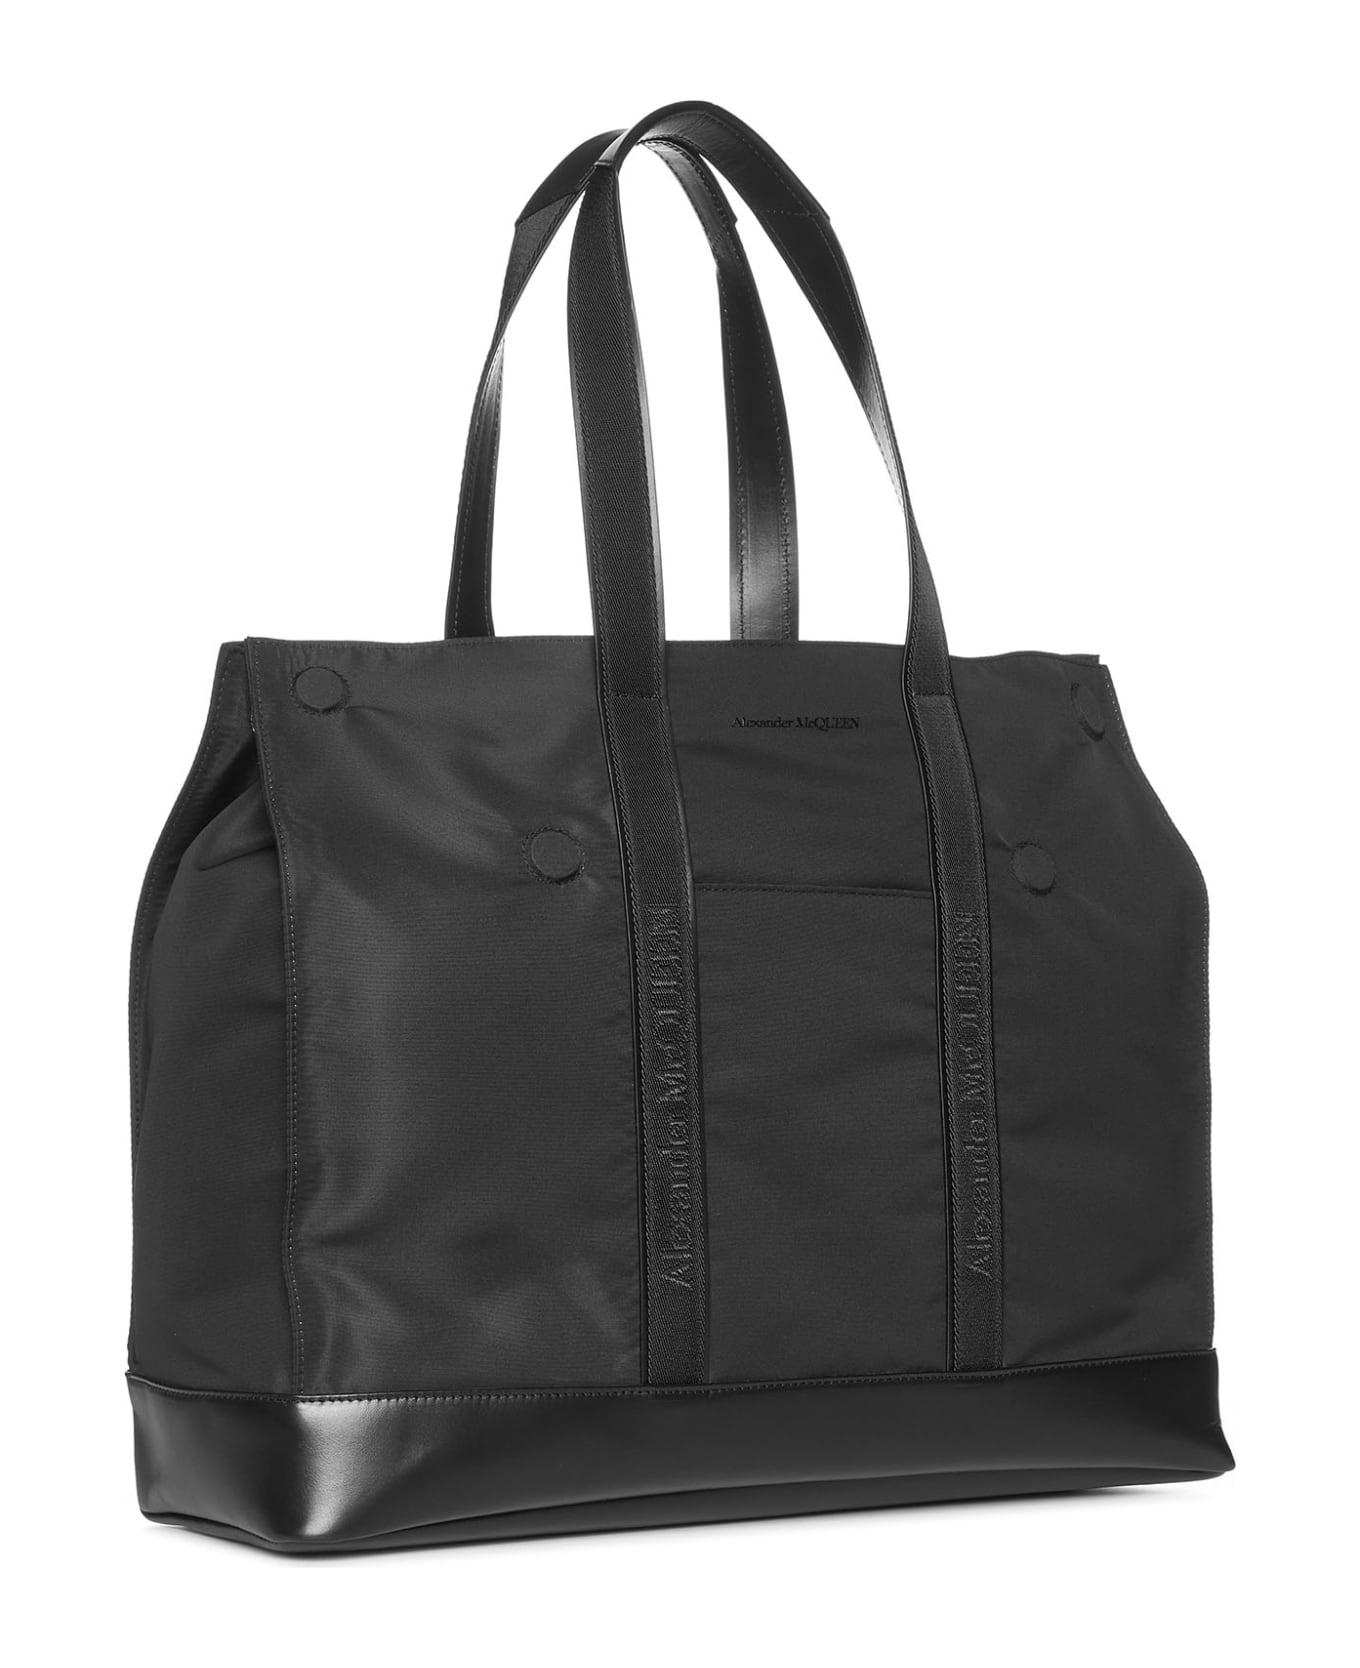 Alexander McQueen Black Nylon And Leather De Manta Tote Bag - Nero